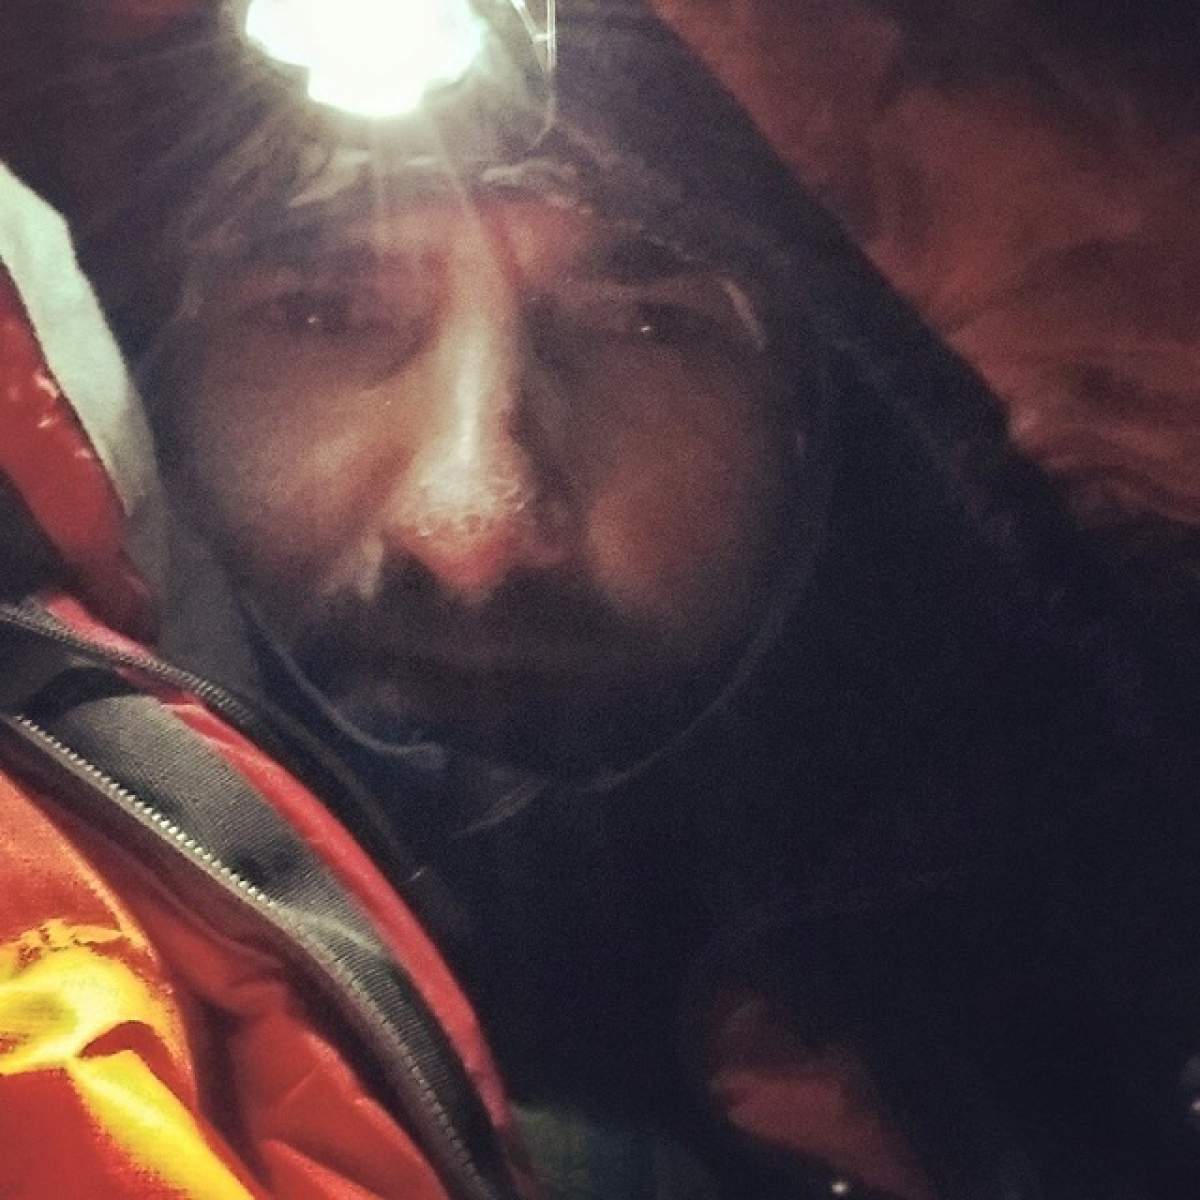 FOTO / IMAGINI cu Alex Găvan, românul plecat în expediţie pe Muntele Everest. Ce făcea alpinistul cu puţin timp înainte de cumplita avalanşă?